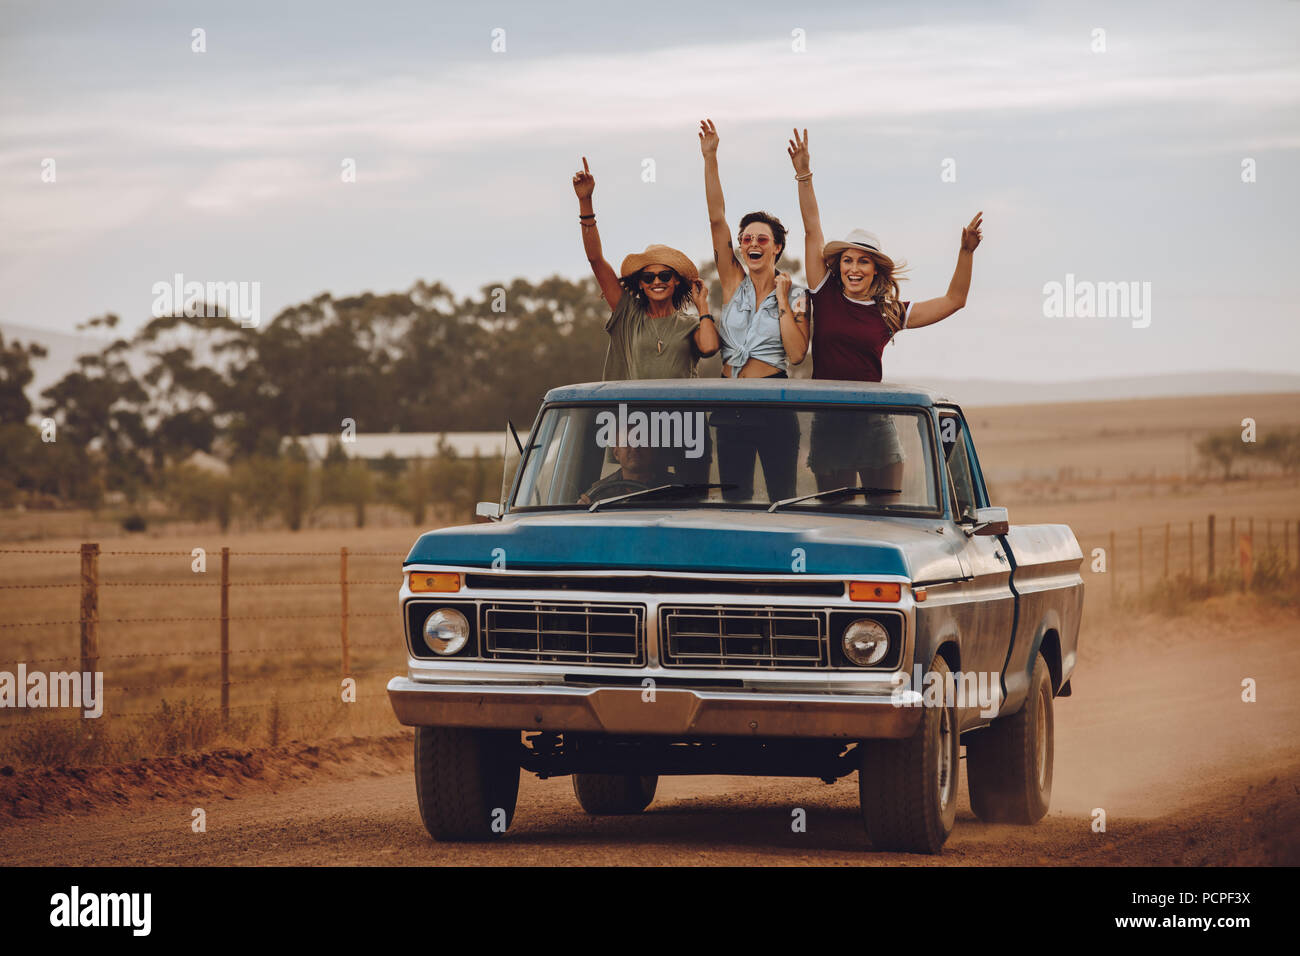 Trois femmes sur un roadtrip dans la campagne sur l'arrière d'une camionnette. Les amis debout dans l'arrière d'un camion ouvert rire avec leurs h Banque D'Images